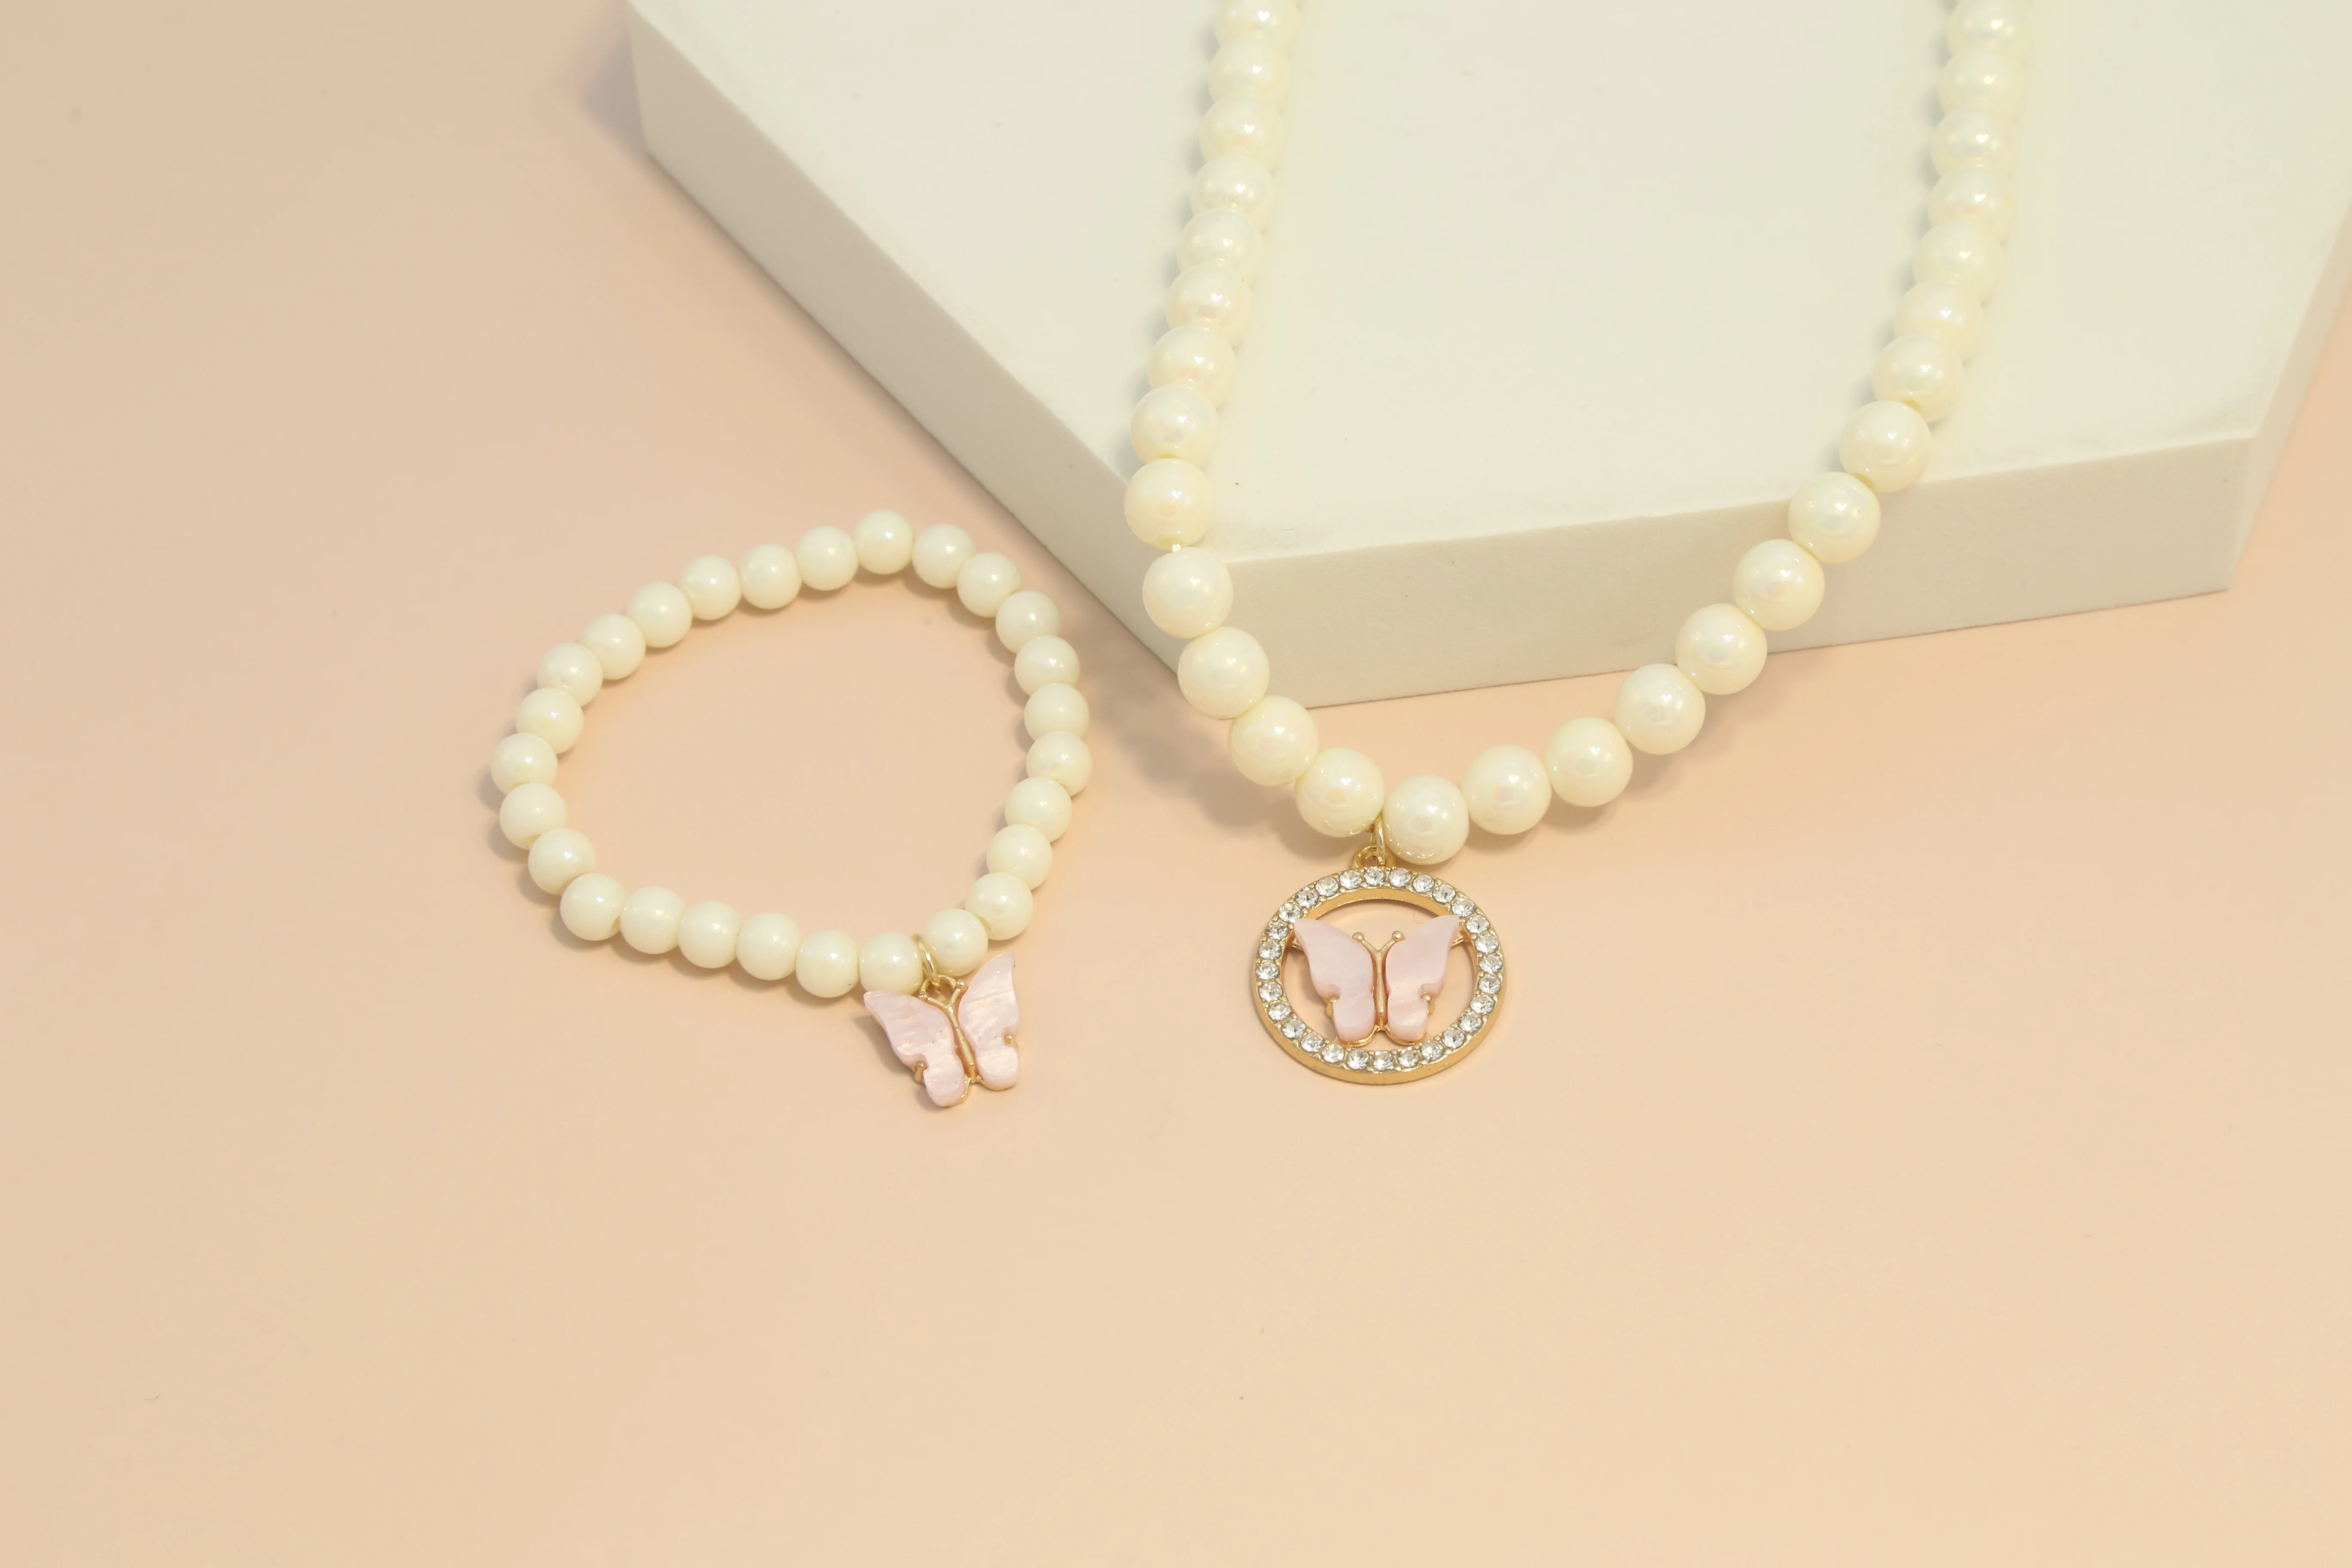 

Комплект ювелирных украшений с подвеской-бабочкой, браслет с бусинами, ожерелье с розовыми и белыми бусинами